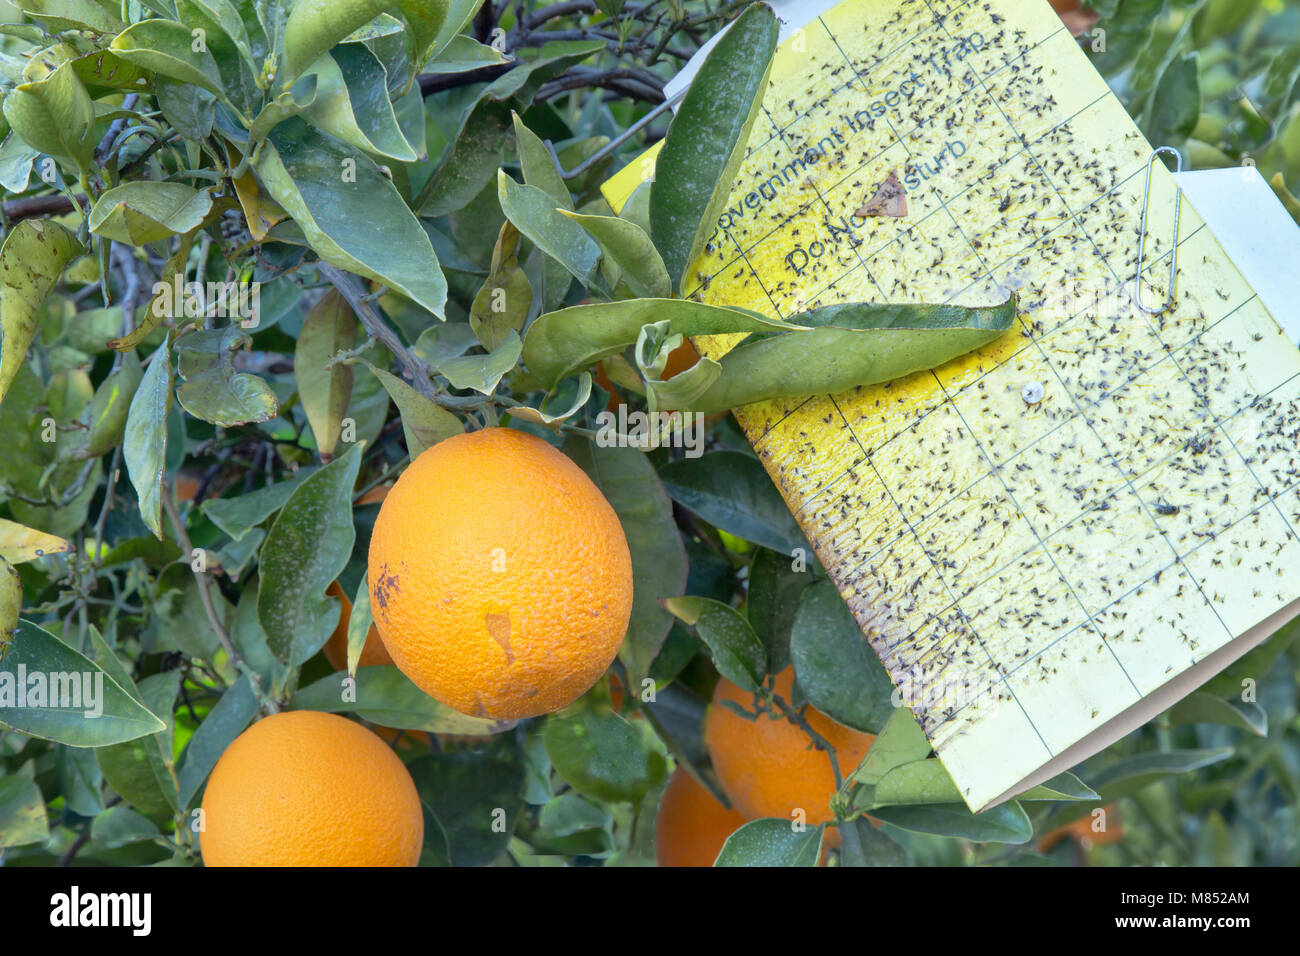 Traités de la faucheuse de maturation sur les oranges Valencia nucellaires Citrus sinensis 'branche', piège les insectes Gouvernement 'ne pas déranger'. Banque D'Images